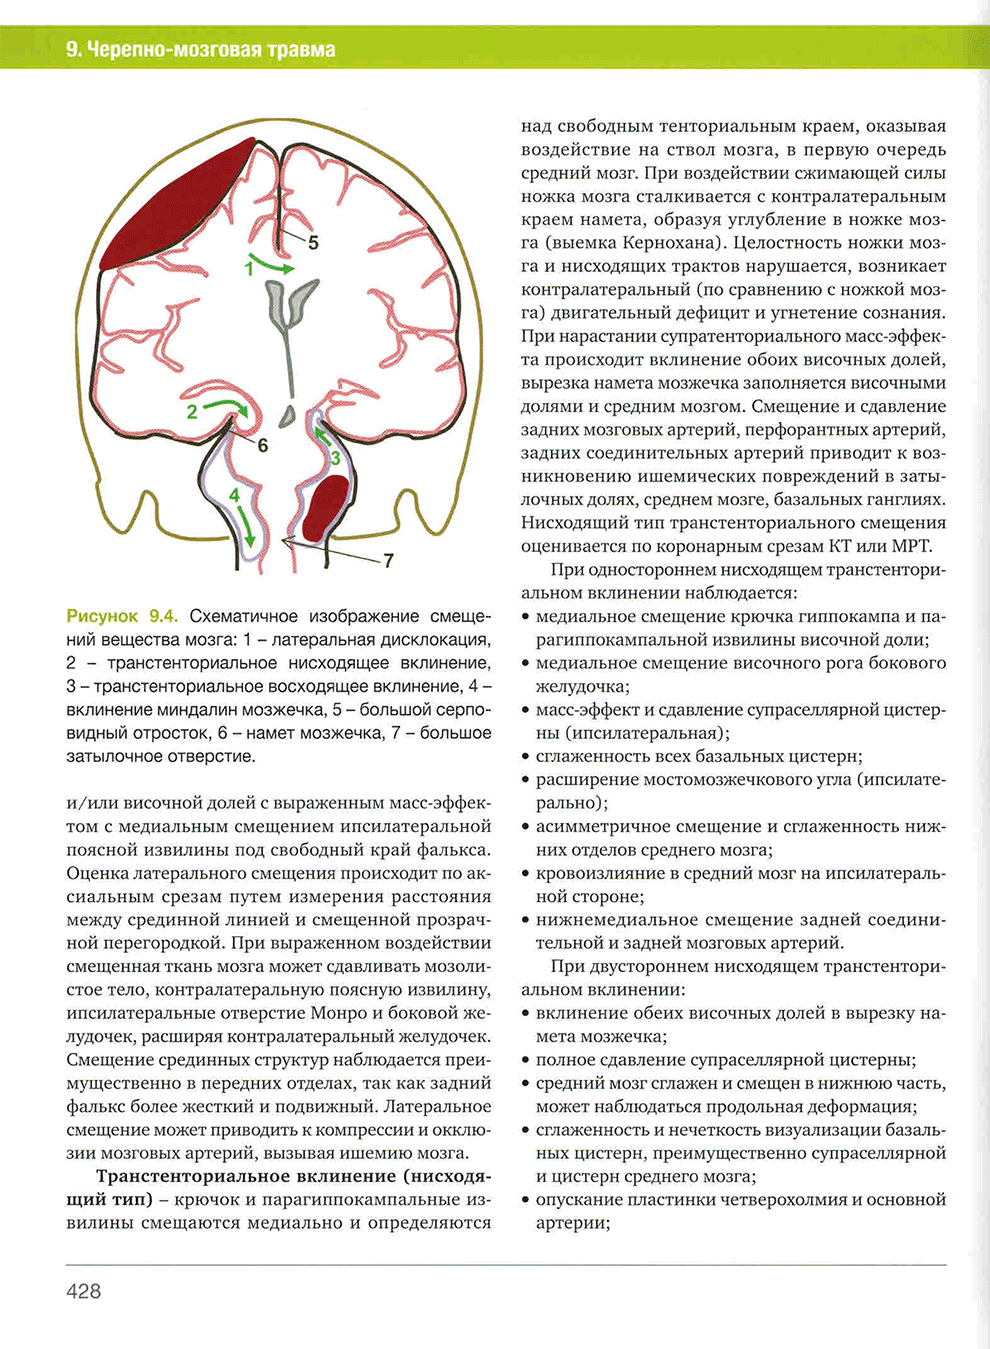 Рисунок 9.4. Схематичное изображение смещений вещества мозга